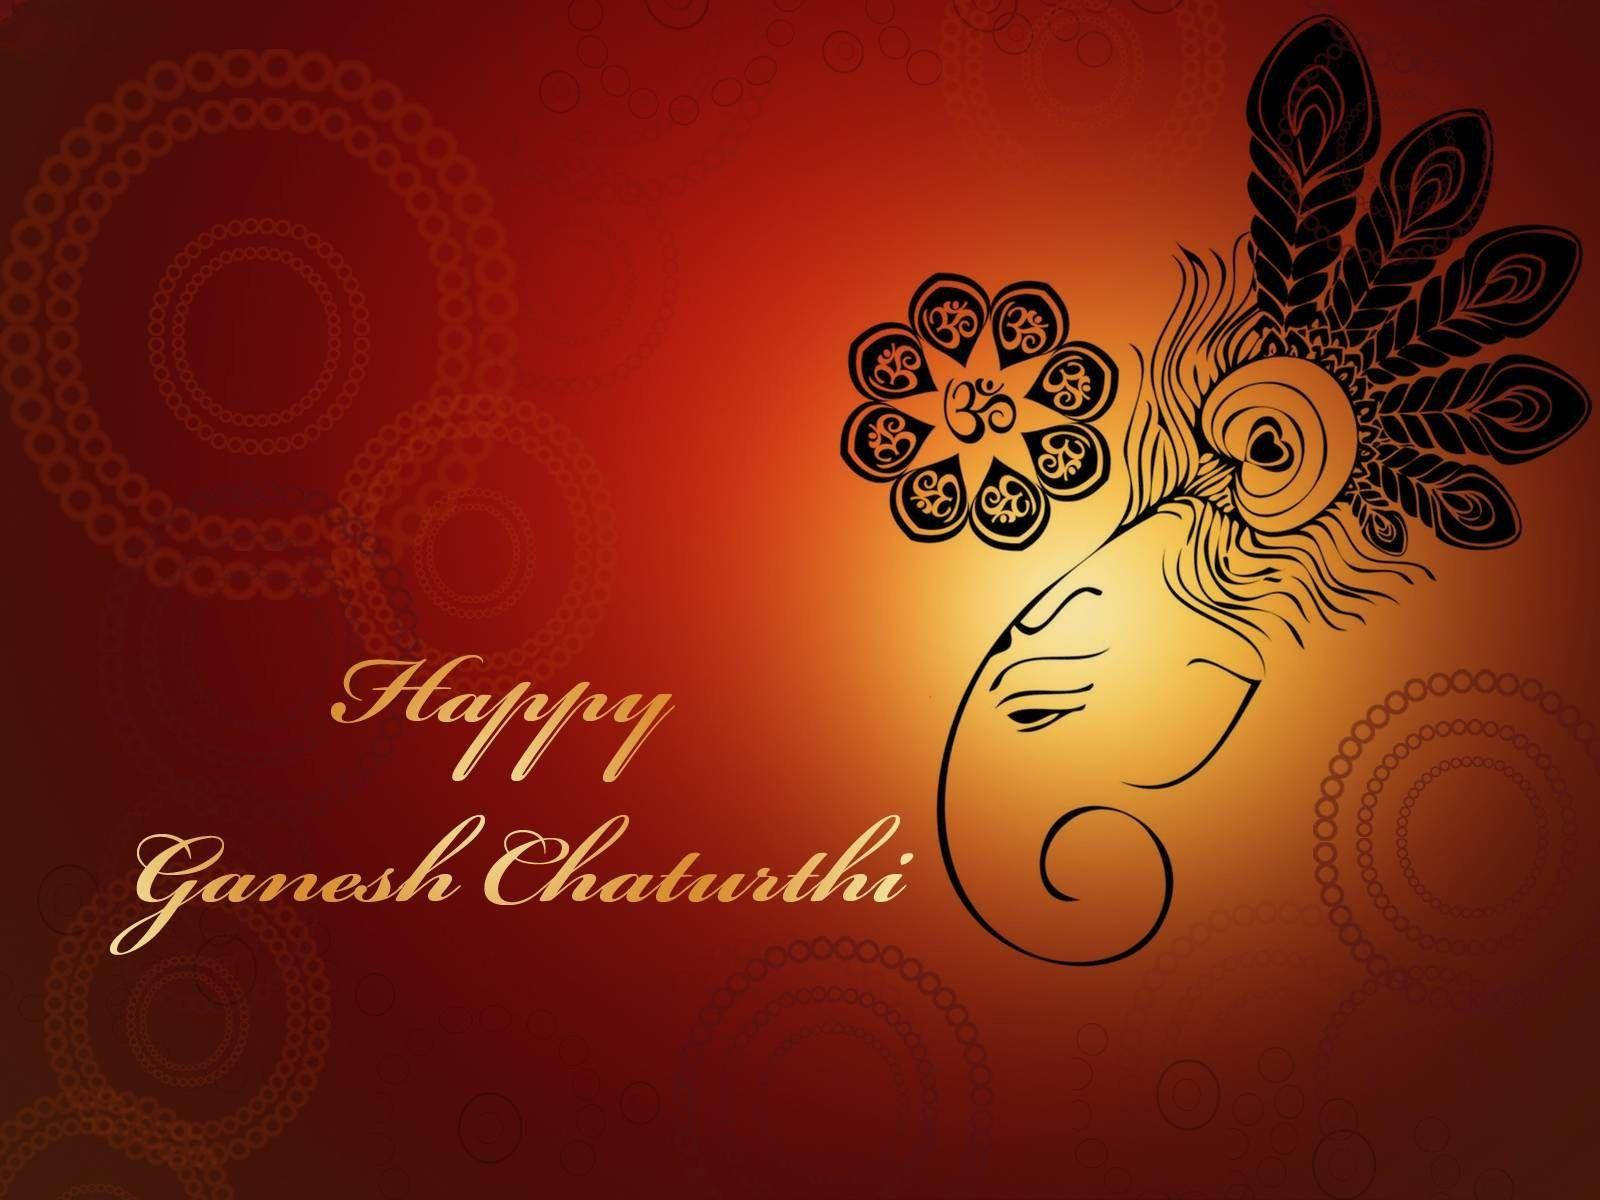 Ganesh Chaturthi Greeting Card Wallpaper